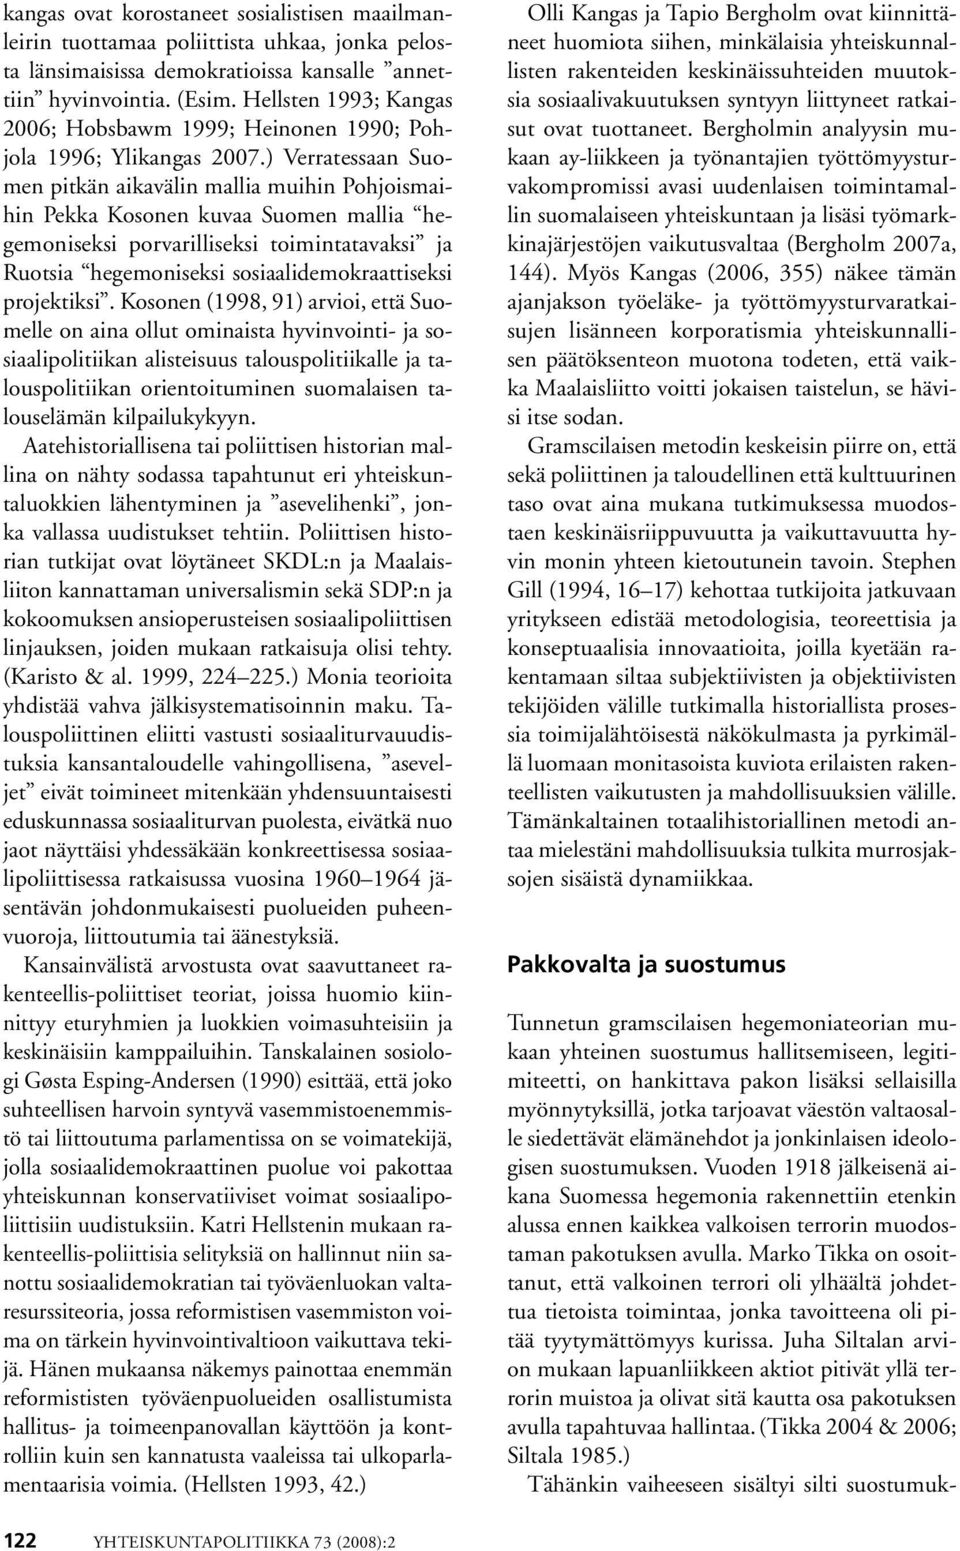 ) Verratessaan Suomen pitkän aikavälin mallia muihin Pohjoismaihin Pekka Kosonen kuvaa Suomen mallia hegemoniseksi porvarilliseksi toimintatavaksi ja Ruotsia hegemoniseksi sosiaalidemokraattiseksi